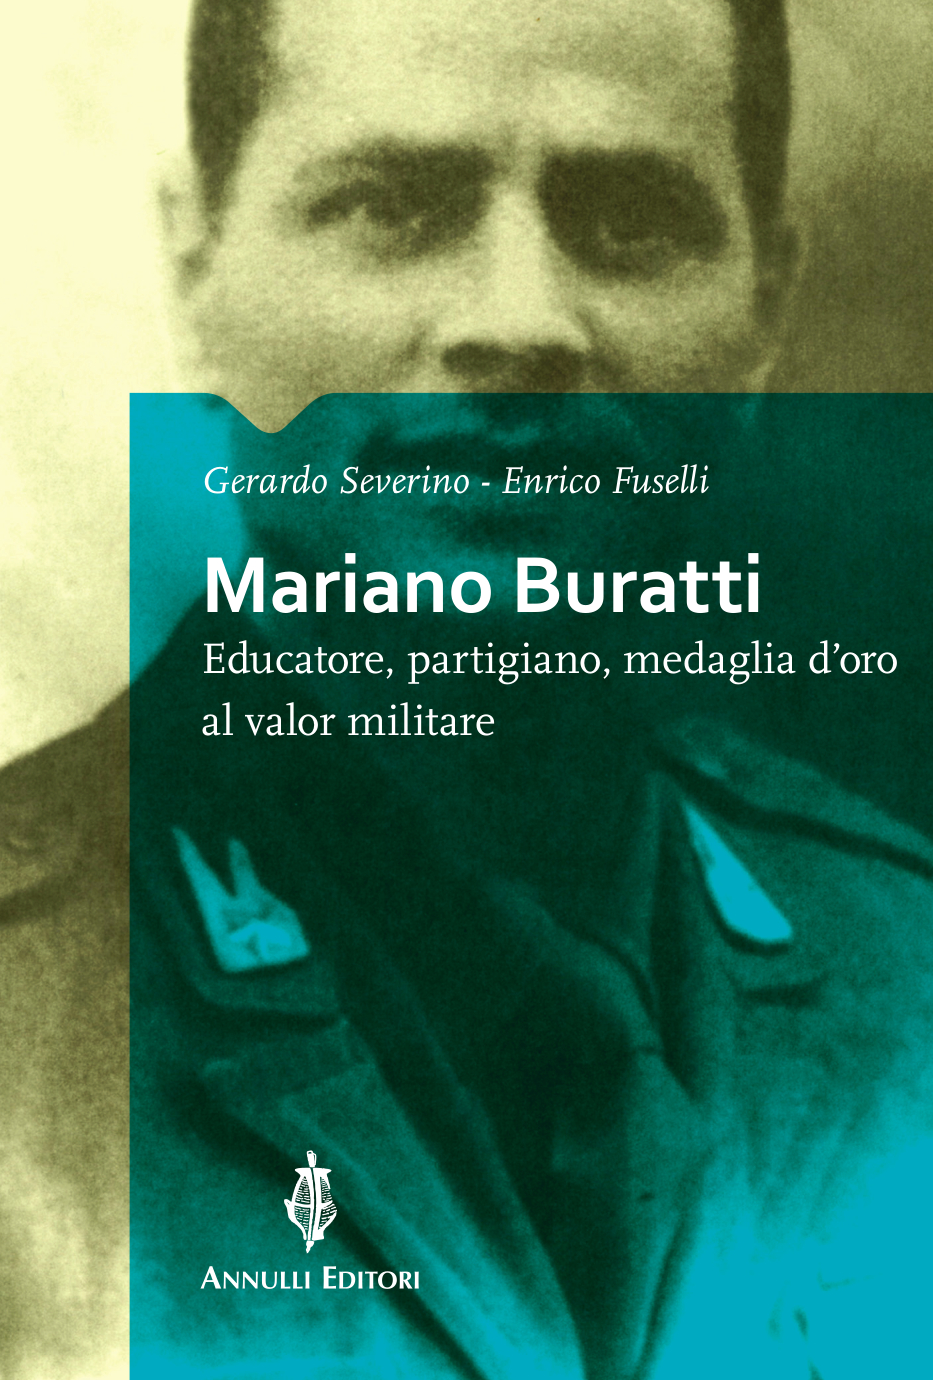 Copertina-Mariano-Buratti_front